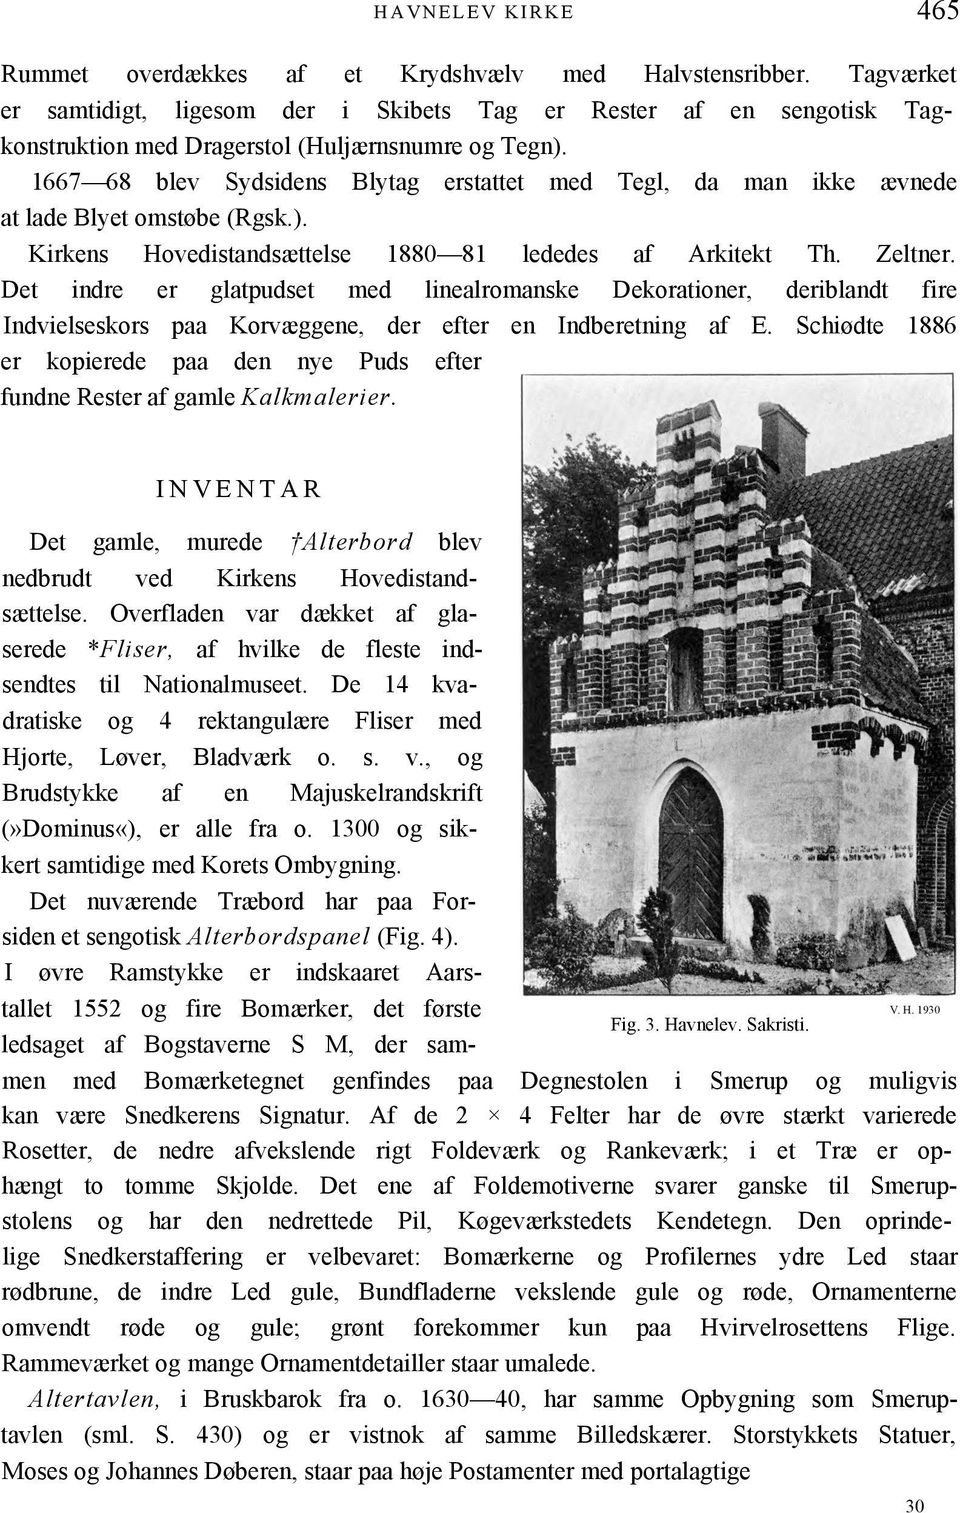 1667 68 blev Sydsidens Blytag erstattet med Tegl, da man ikke ævnede at lade Blyet omstøbe (Rgsk.). Kirkens Hovedistandsættelse 1880 81 lededes af Arkitekt Th. Zeltner.